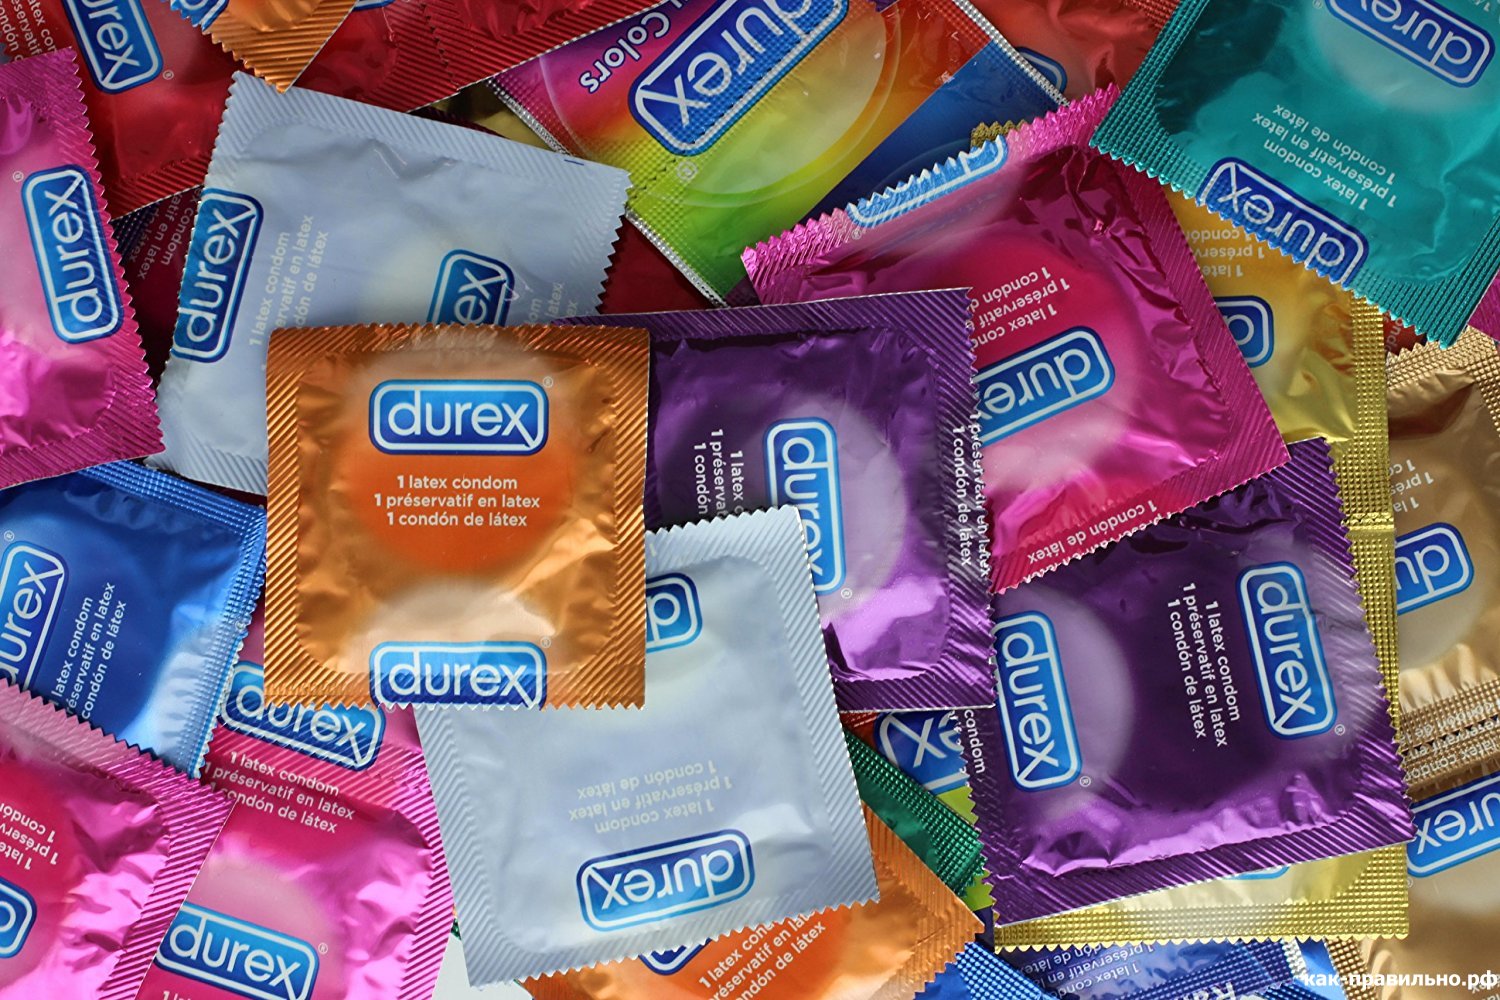 Новость - События - Сделай тест: в Украине продавались бракованные презервативы